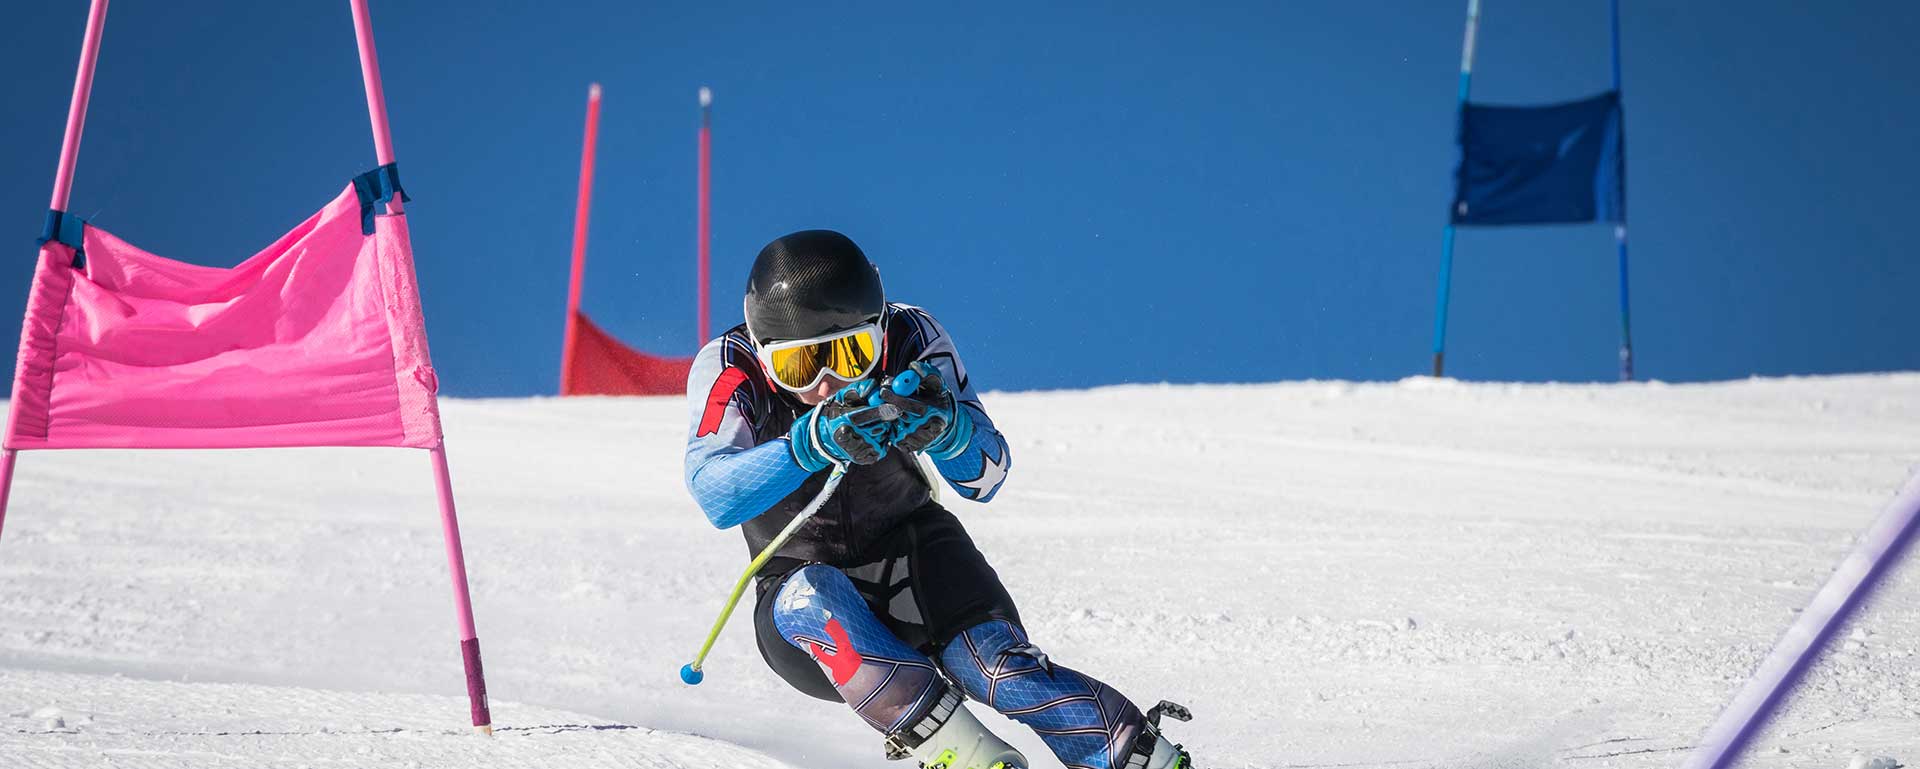 47. Mistrzostwa Świata w narciarstwie alpejskim